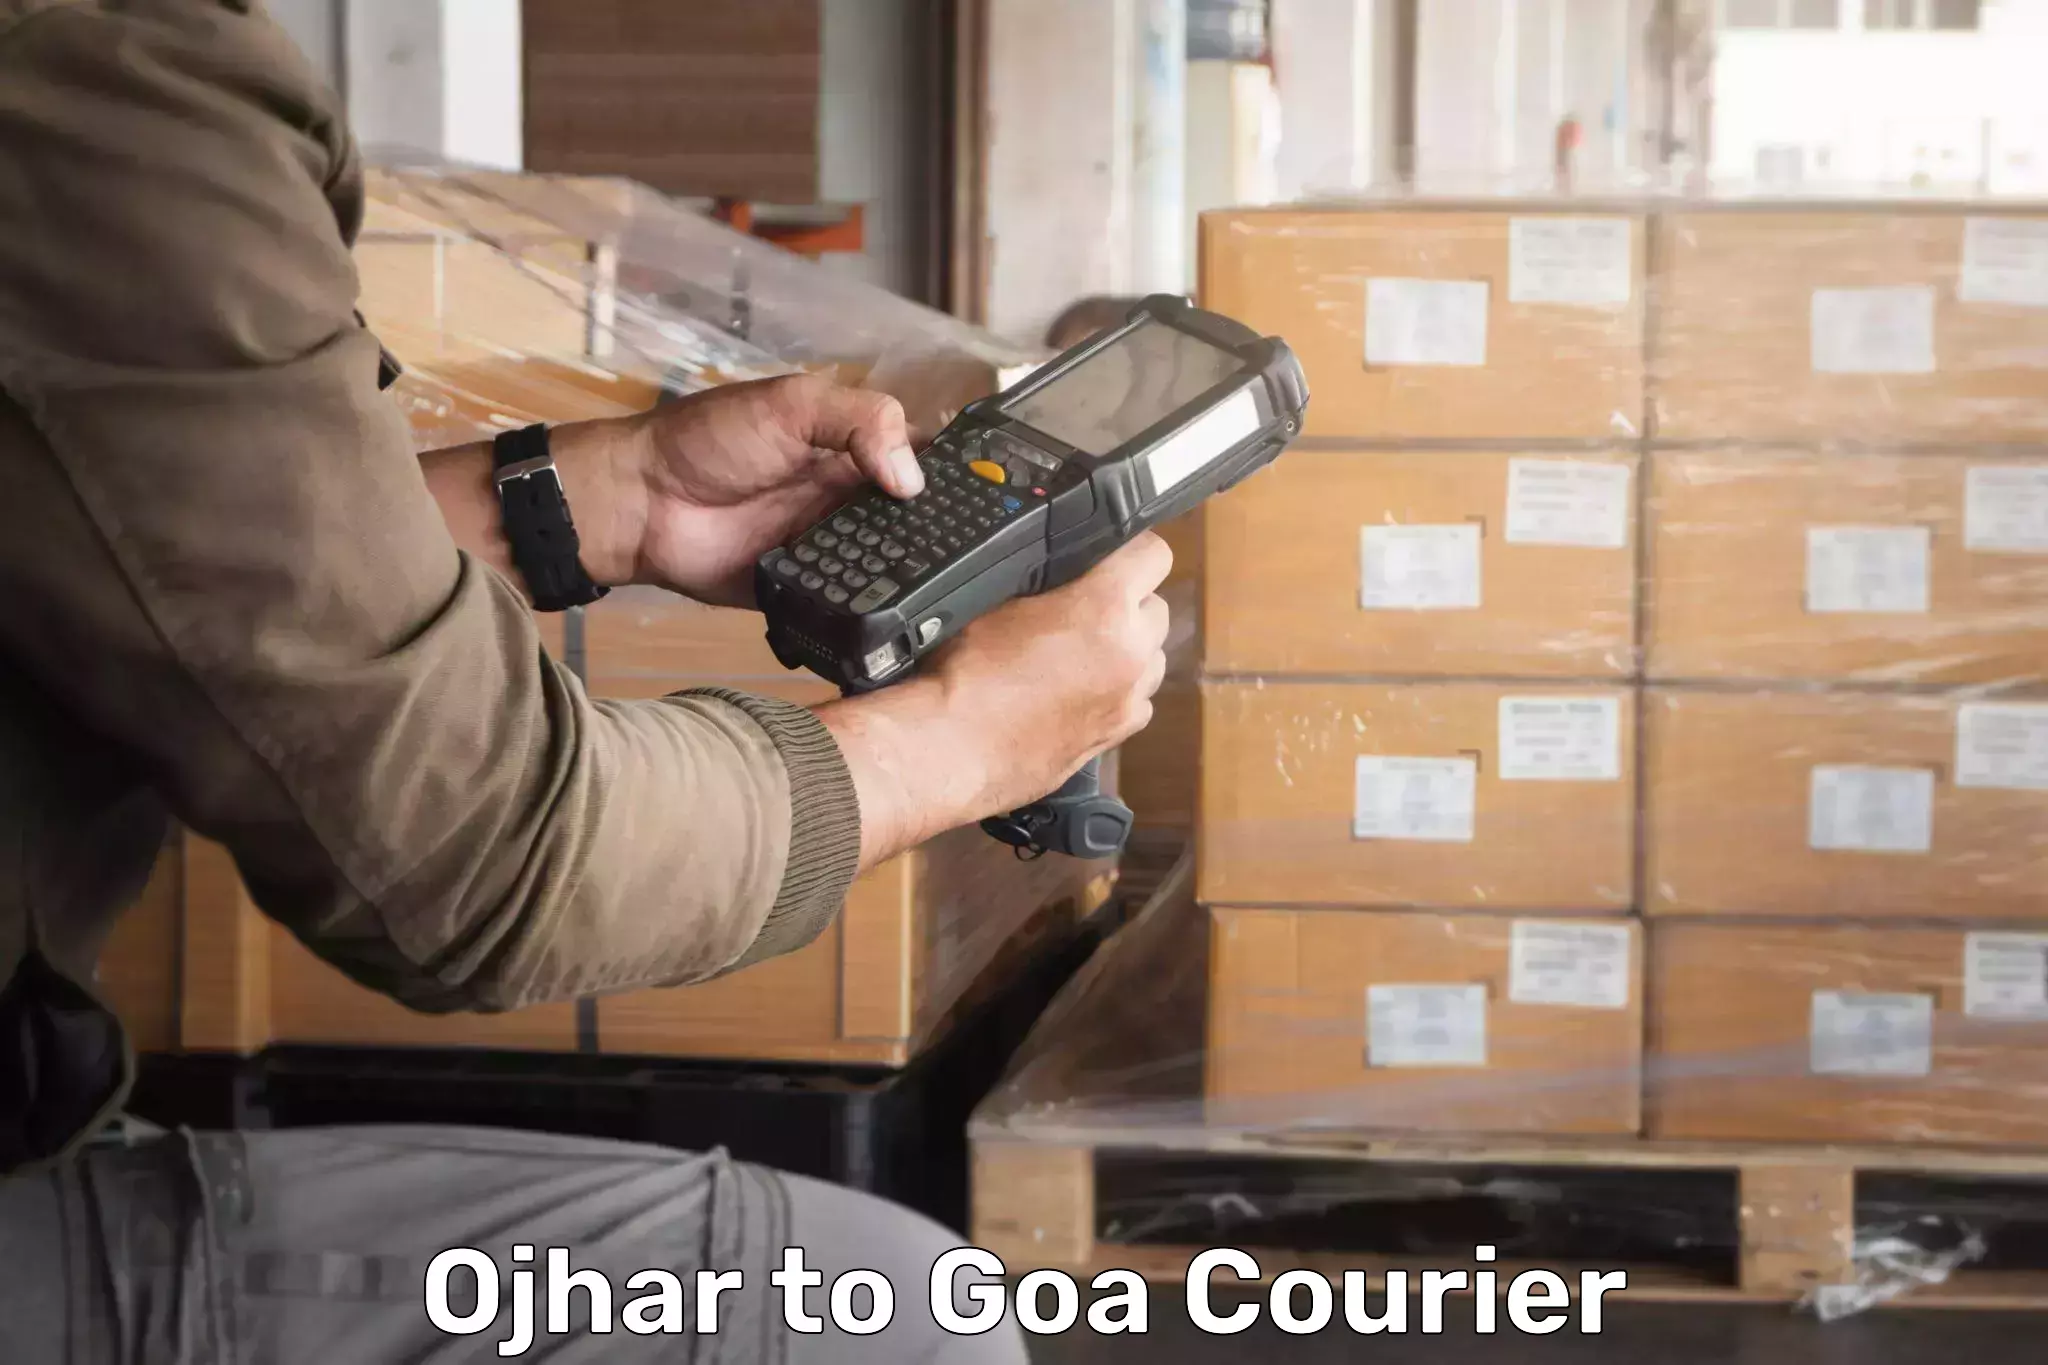 24/7 shipping services Ojhar to Goa